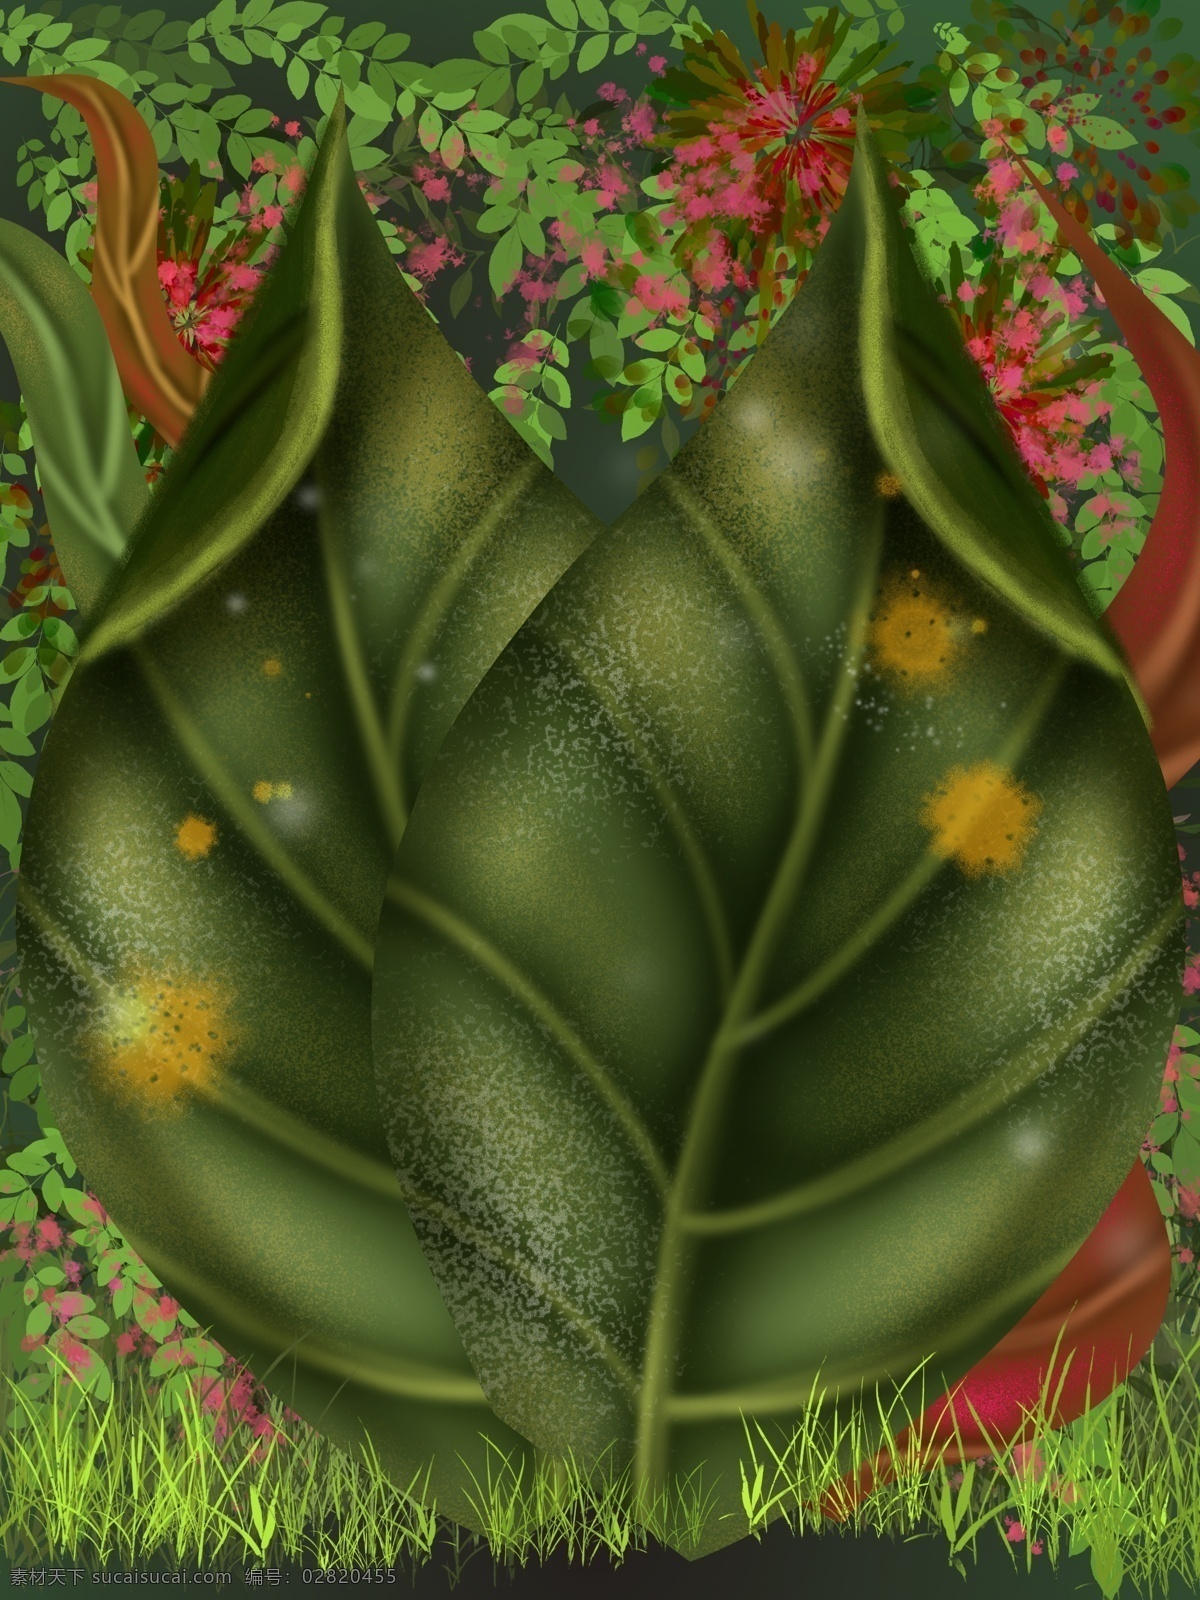 创意 唯美 小 清晰 花卉 植物 背景 鲜花背景 植物背景 叶子背景 抽象 绿色 文艺典雅背景 通用背景